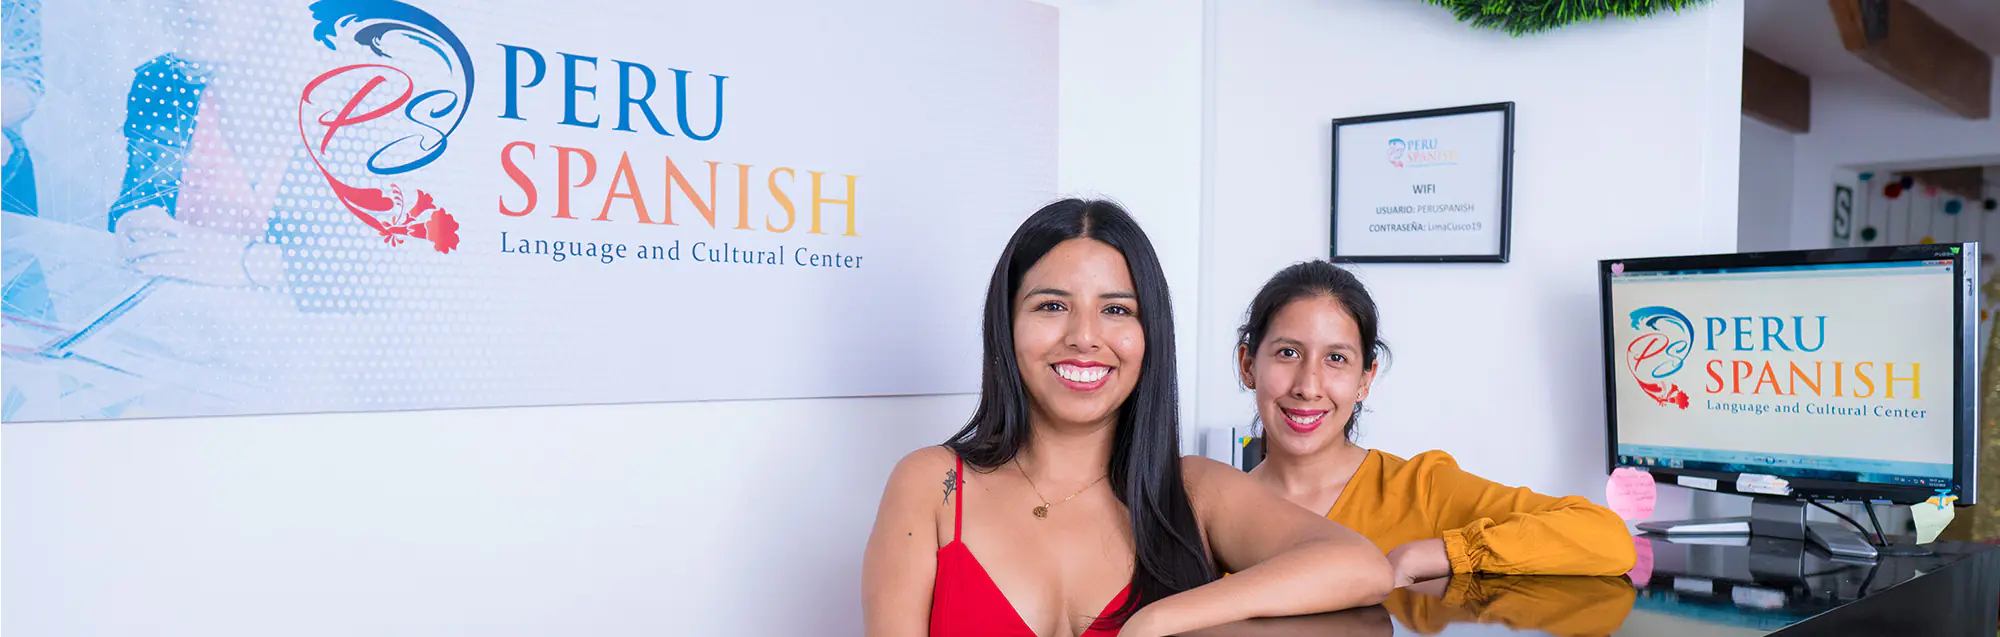 Les programmes de visa de étudier et travailler Peru Spanish Lima